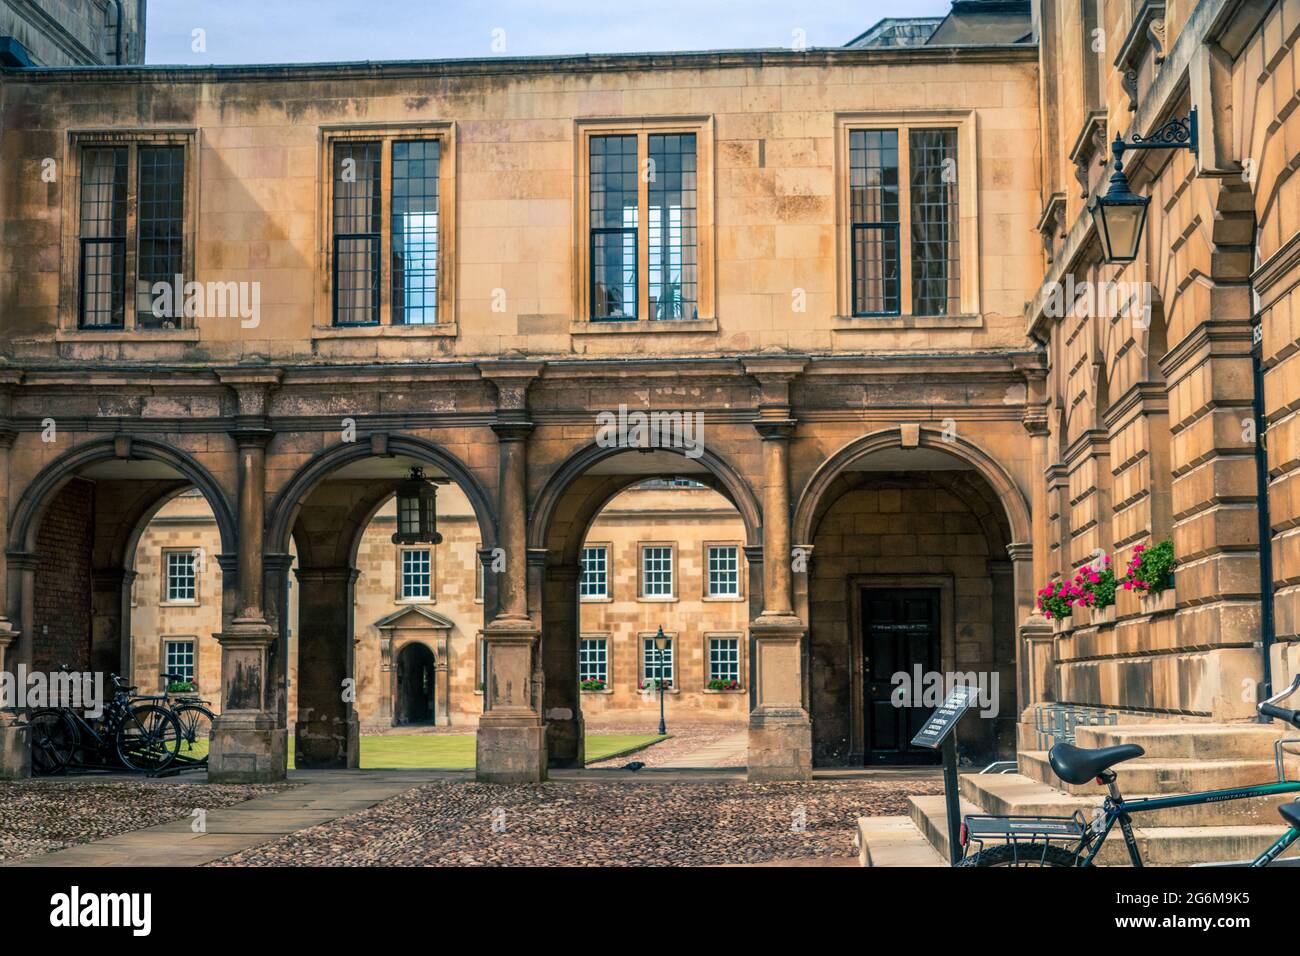 First Court of Peterhouse College University of Cambridge mit gewölbtem Gehweg mit Galerien oben und Zyklen im Vordergrund auf gepflastertem Boden Stockfoto